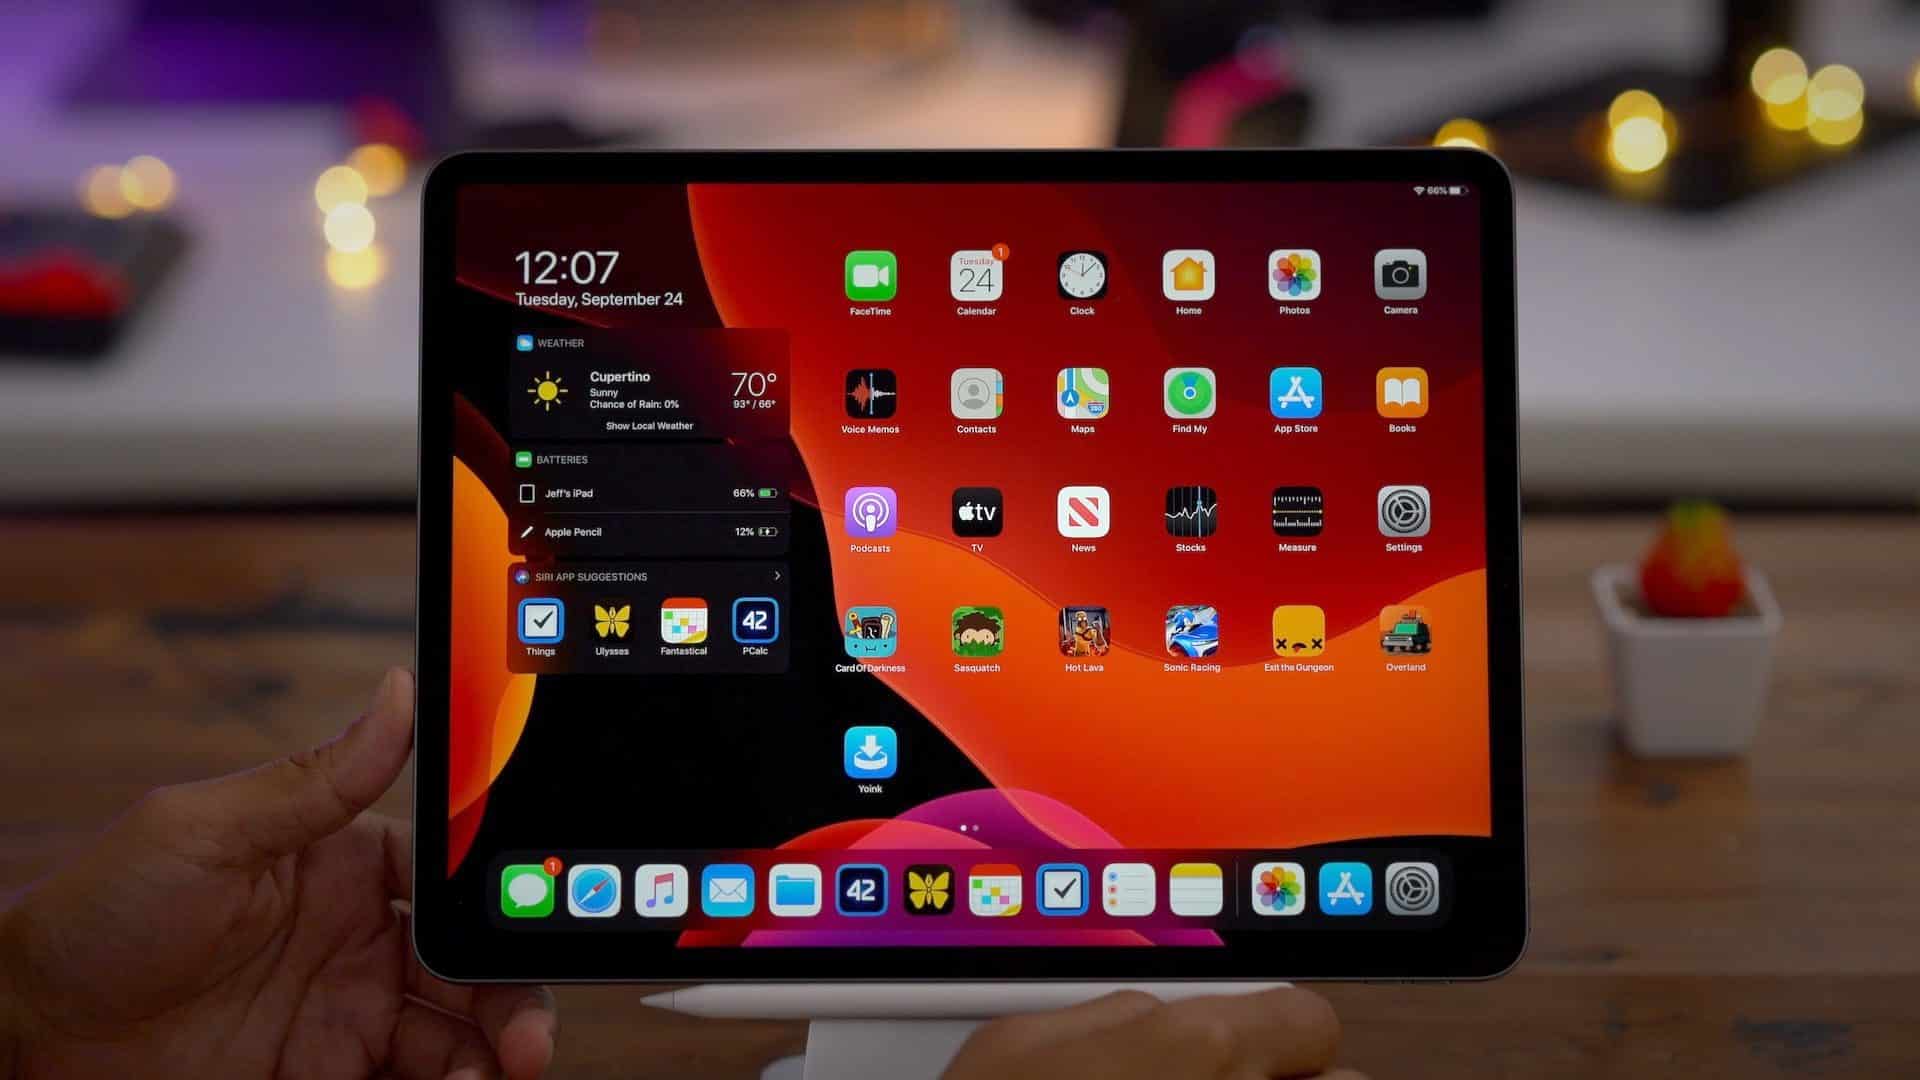 iPadOS 13.1.1